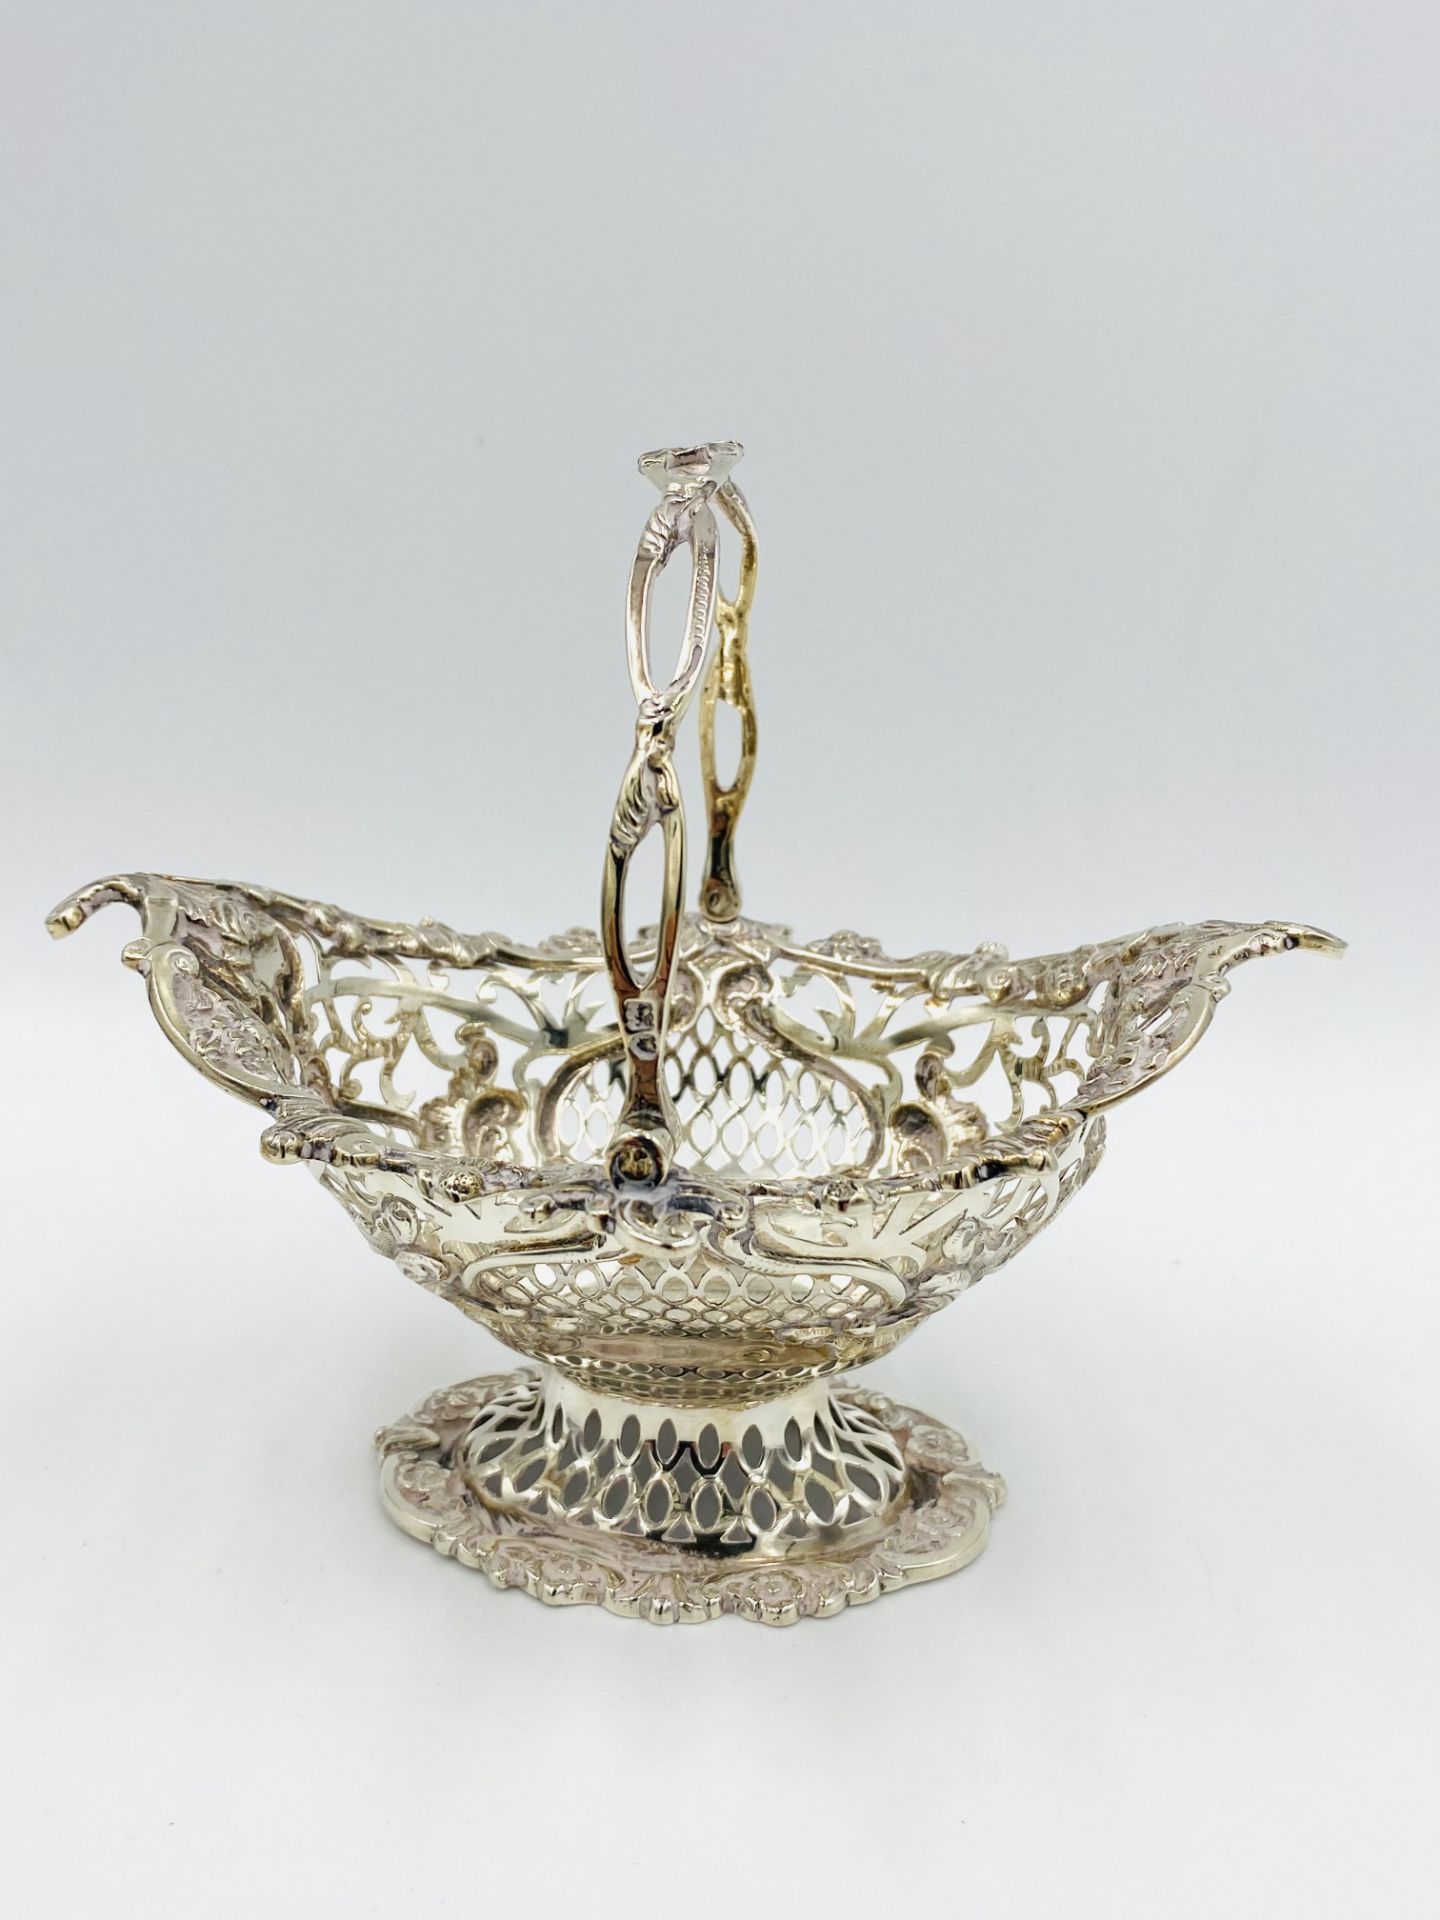 Pierced silver basket, London 1909 - Image 2 of 3